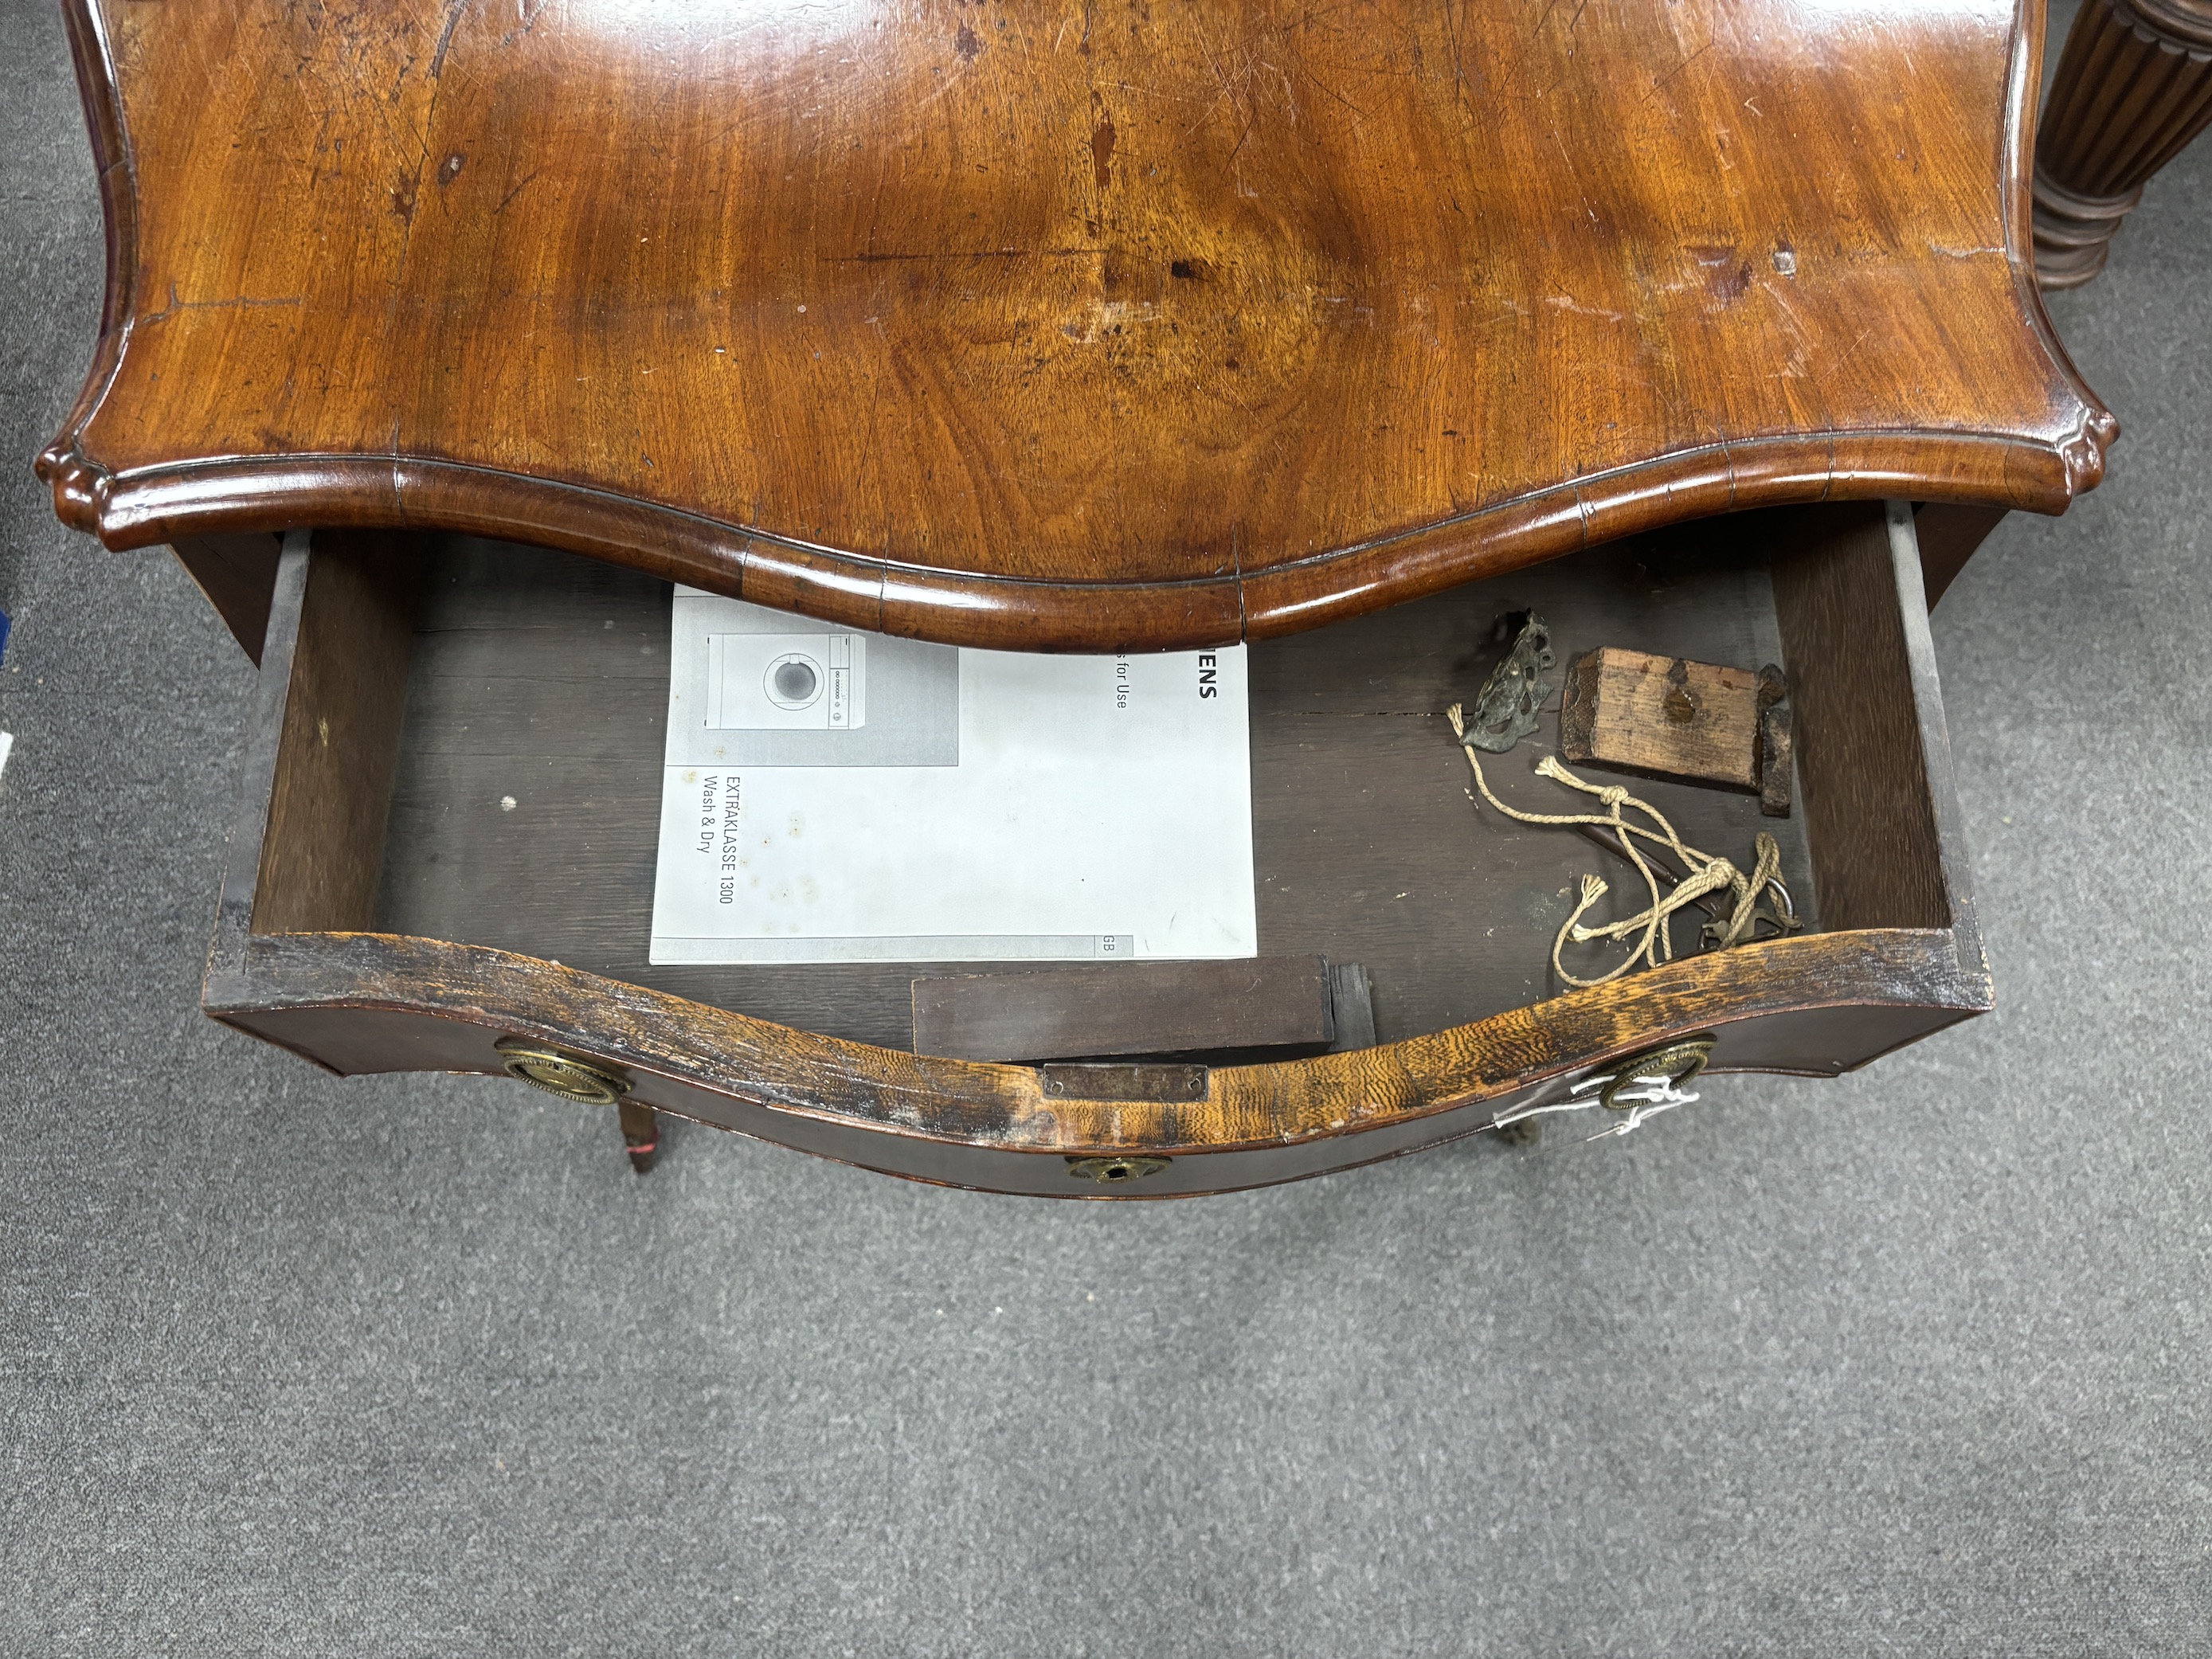 An 18th century Dutch walnut side table, width 76cm, depth 39cm, height 73cm